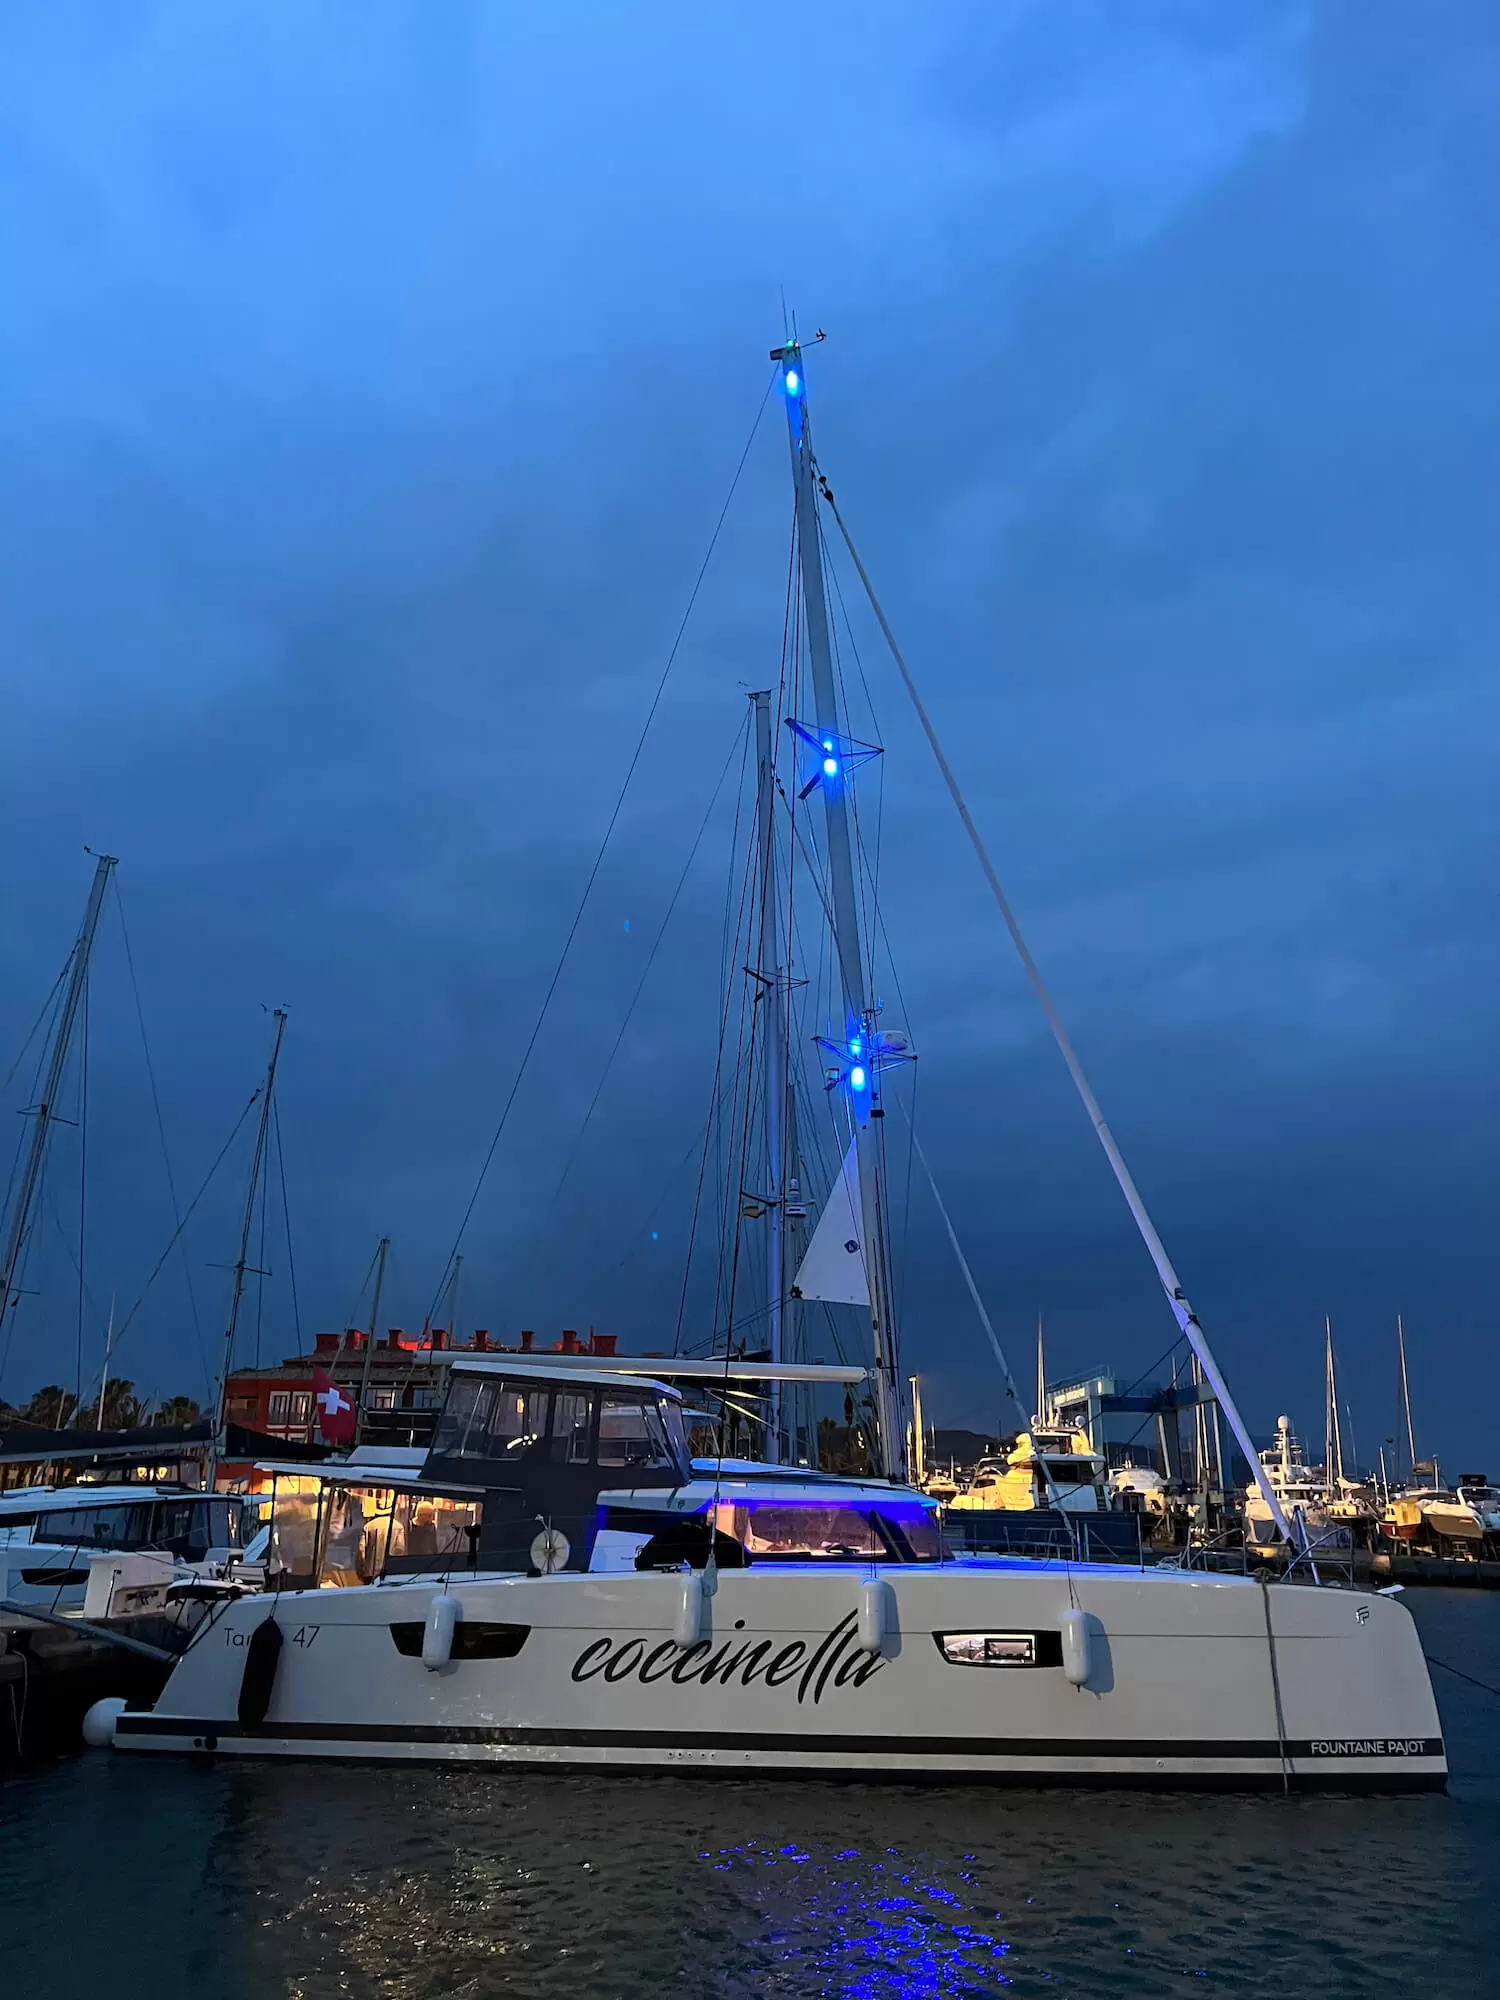 Coccinella Yacht mit Nachtlichtern an